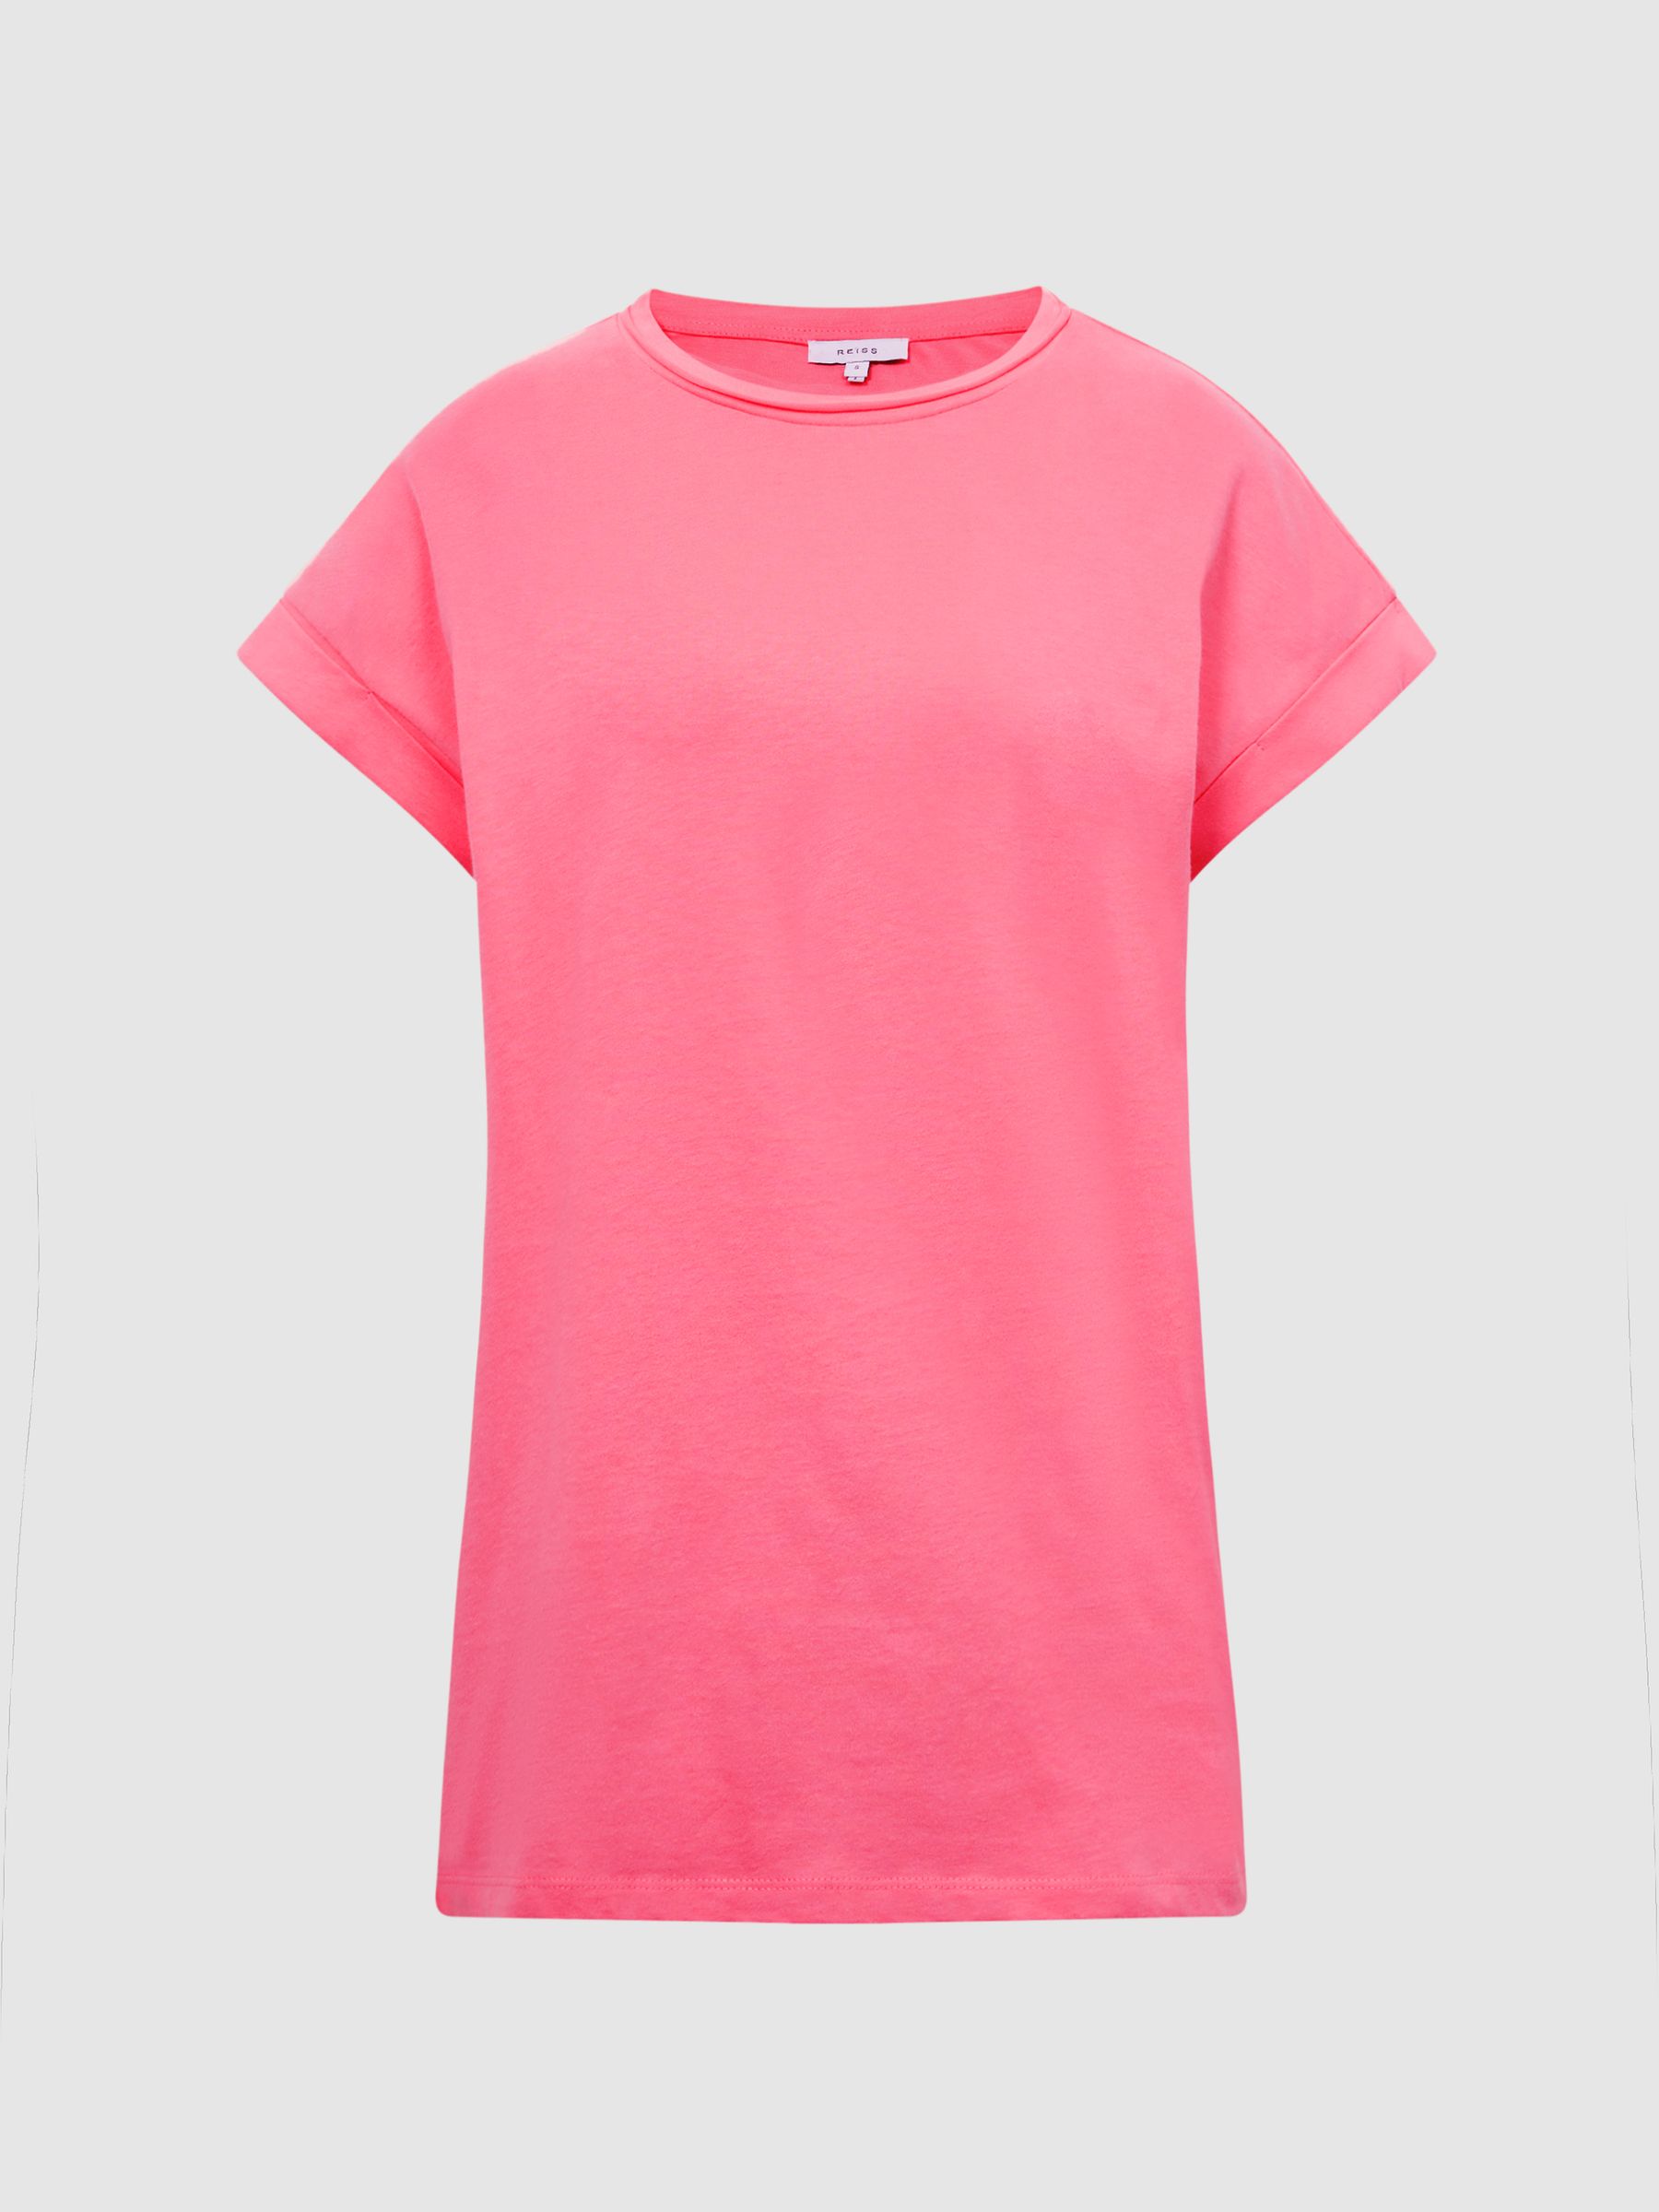 Reiss Tereza Cotton Jersey T-Shirt - REISS